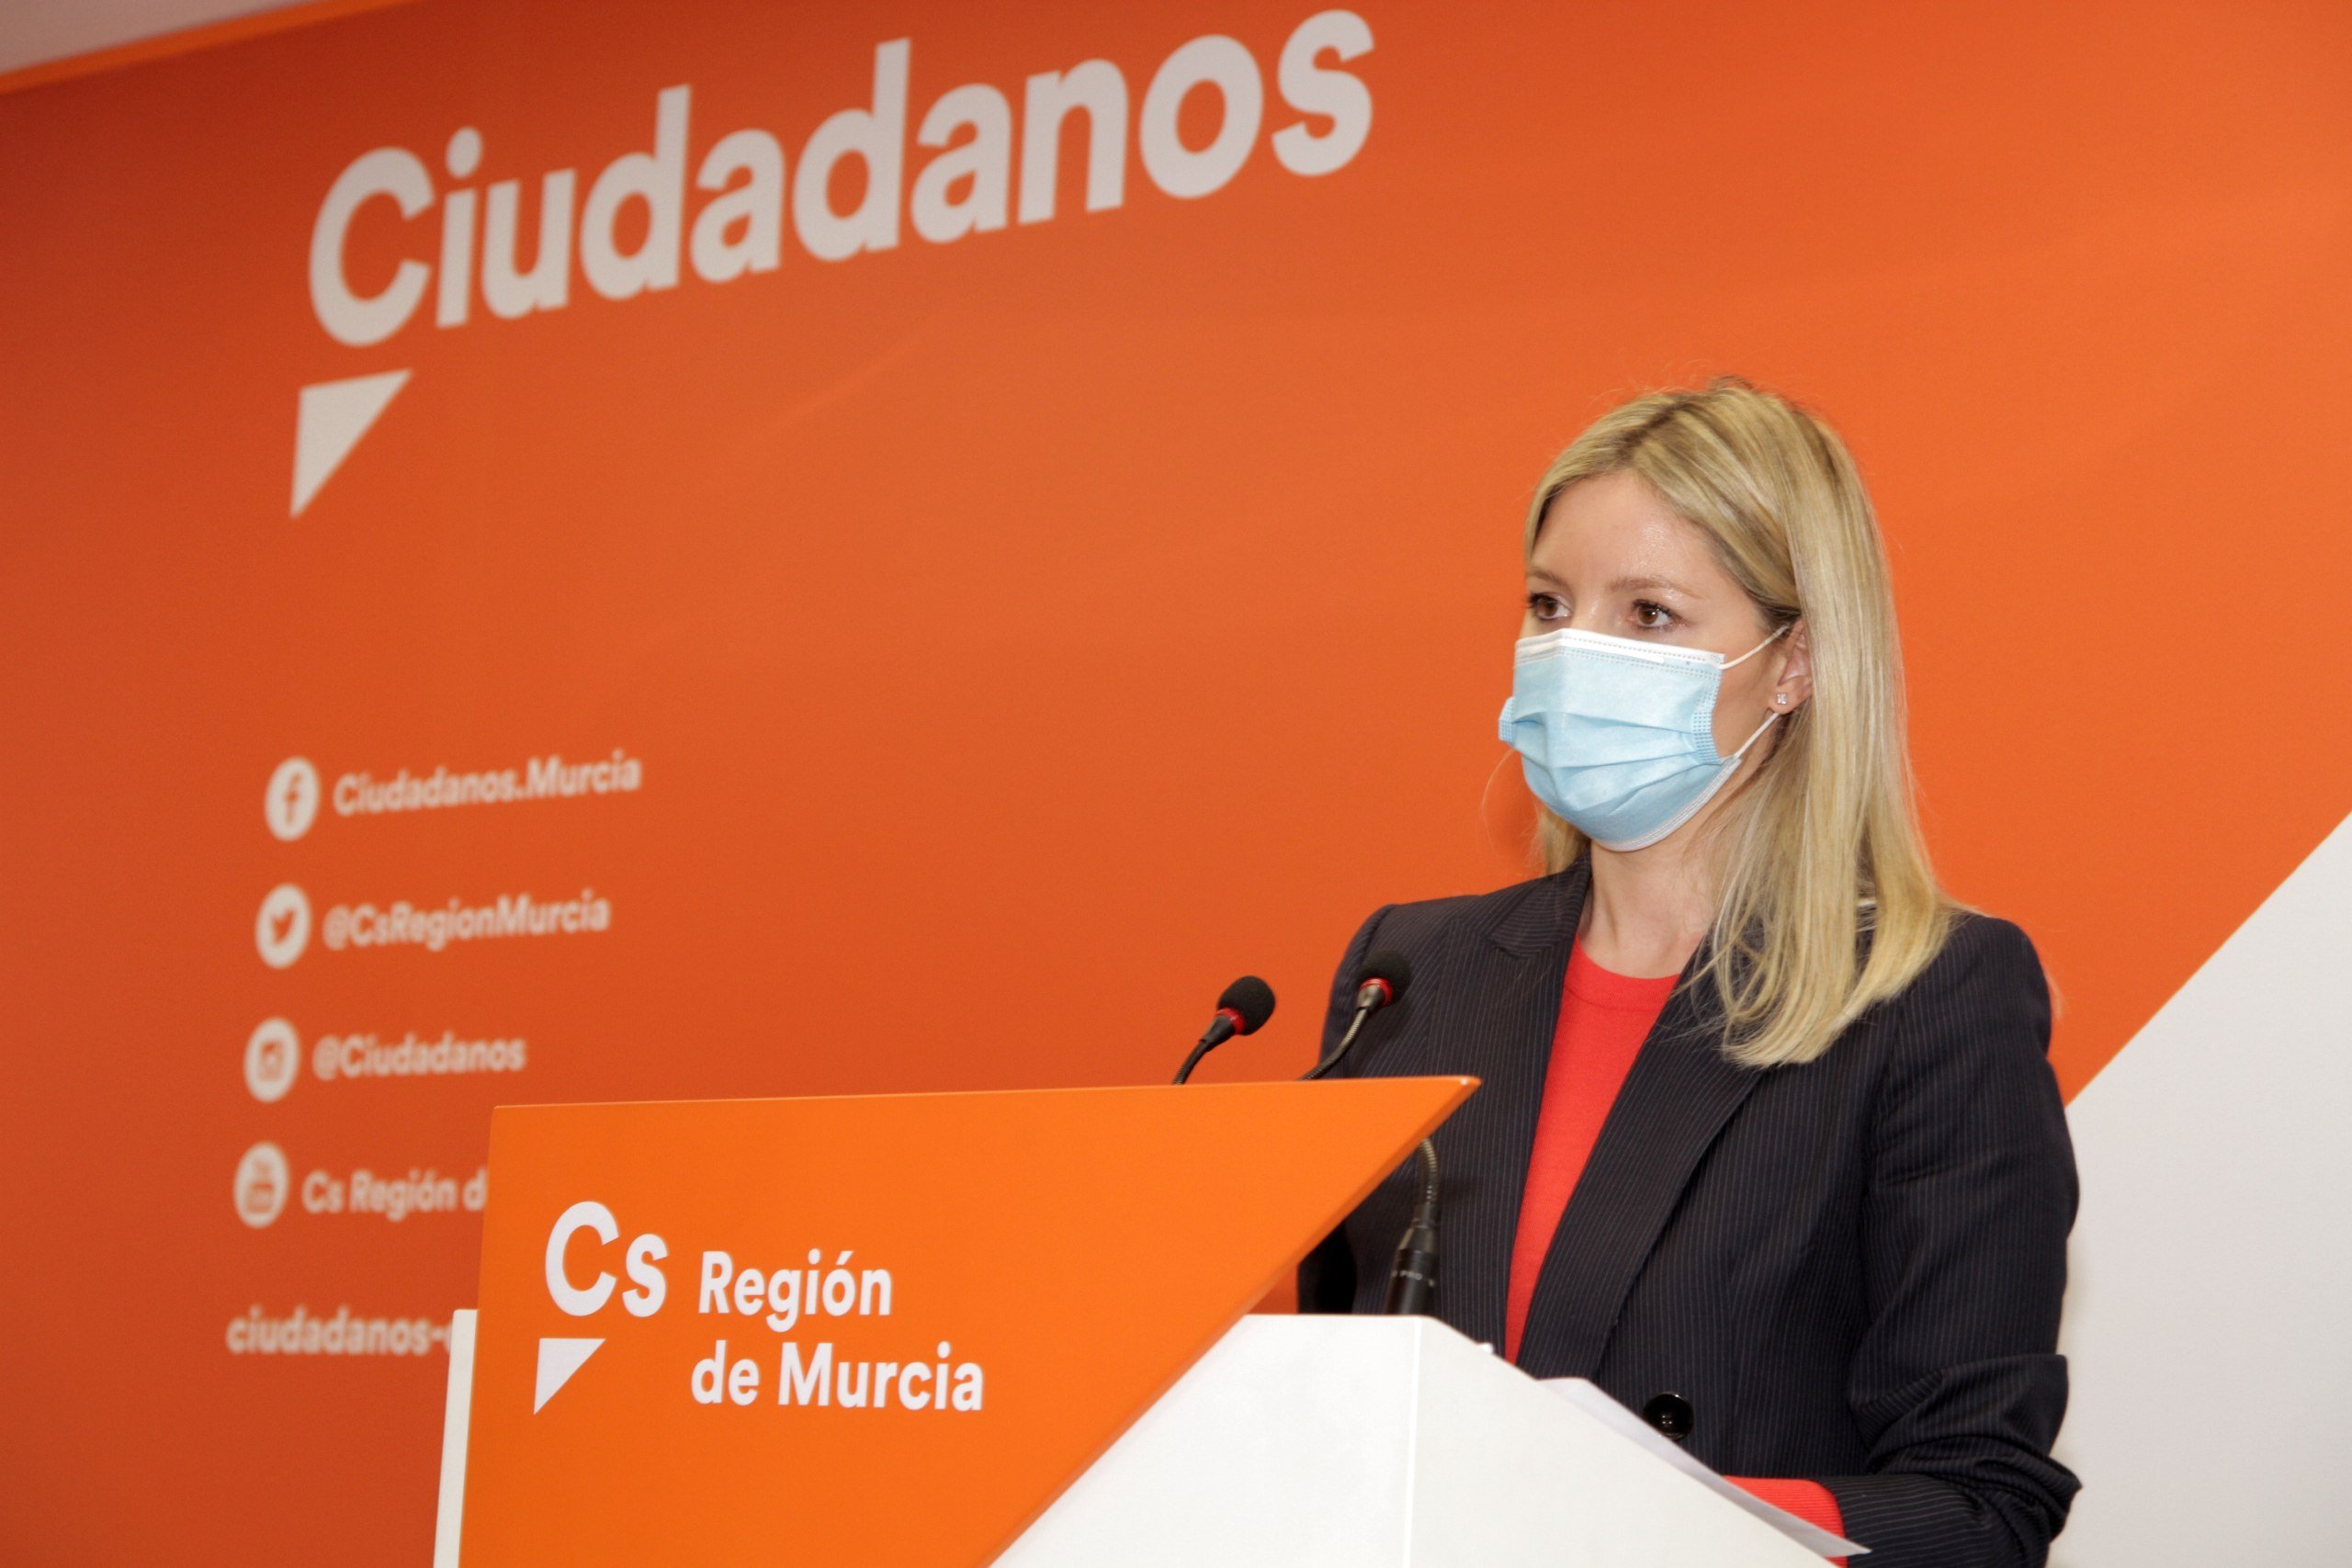 Ana Martínez Vidal Ciudadanos Murcia EP